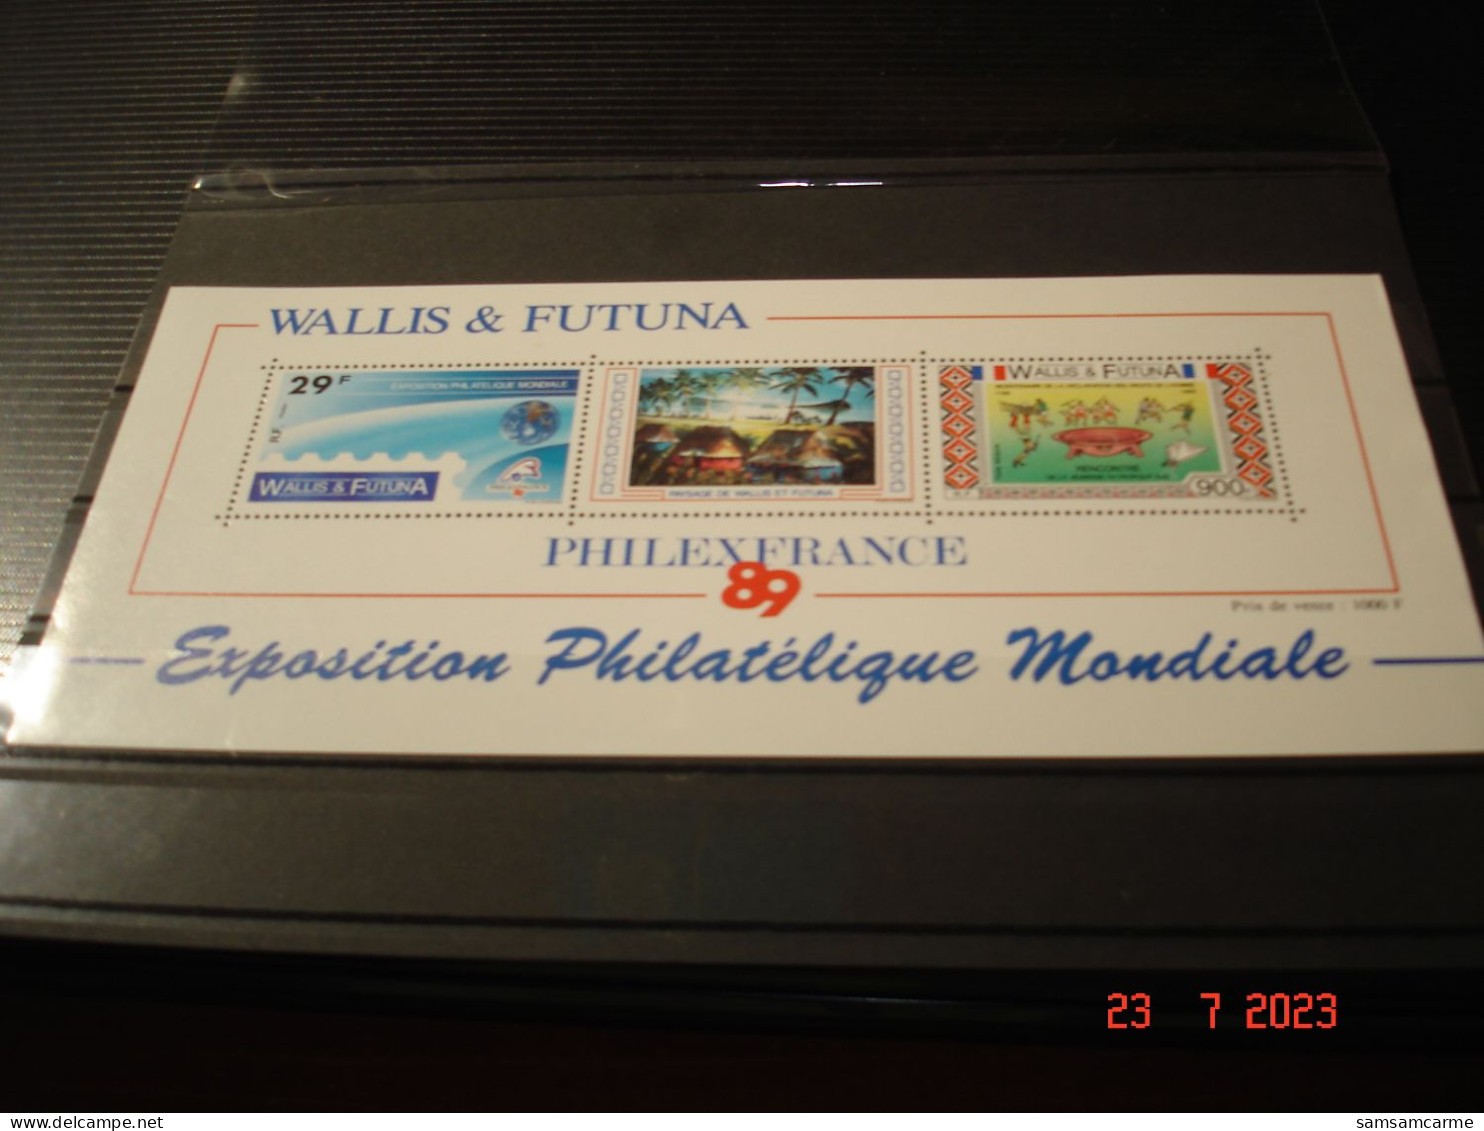 WALLIS ET FUTUNA    ANNEE  1989     BLOC FEUILLET NEUF N° 4    "  PHILEX FANCE 89 "  EXPOSITION PHILATELIQUE MONDIALE - Blocks & Sheetlets